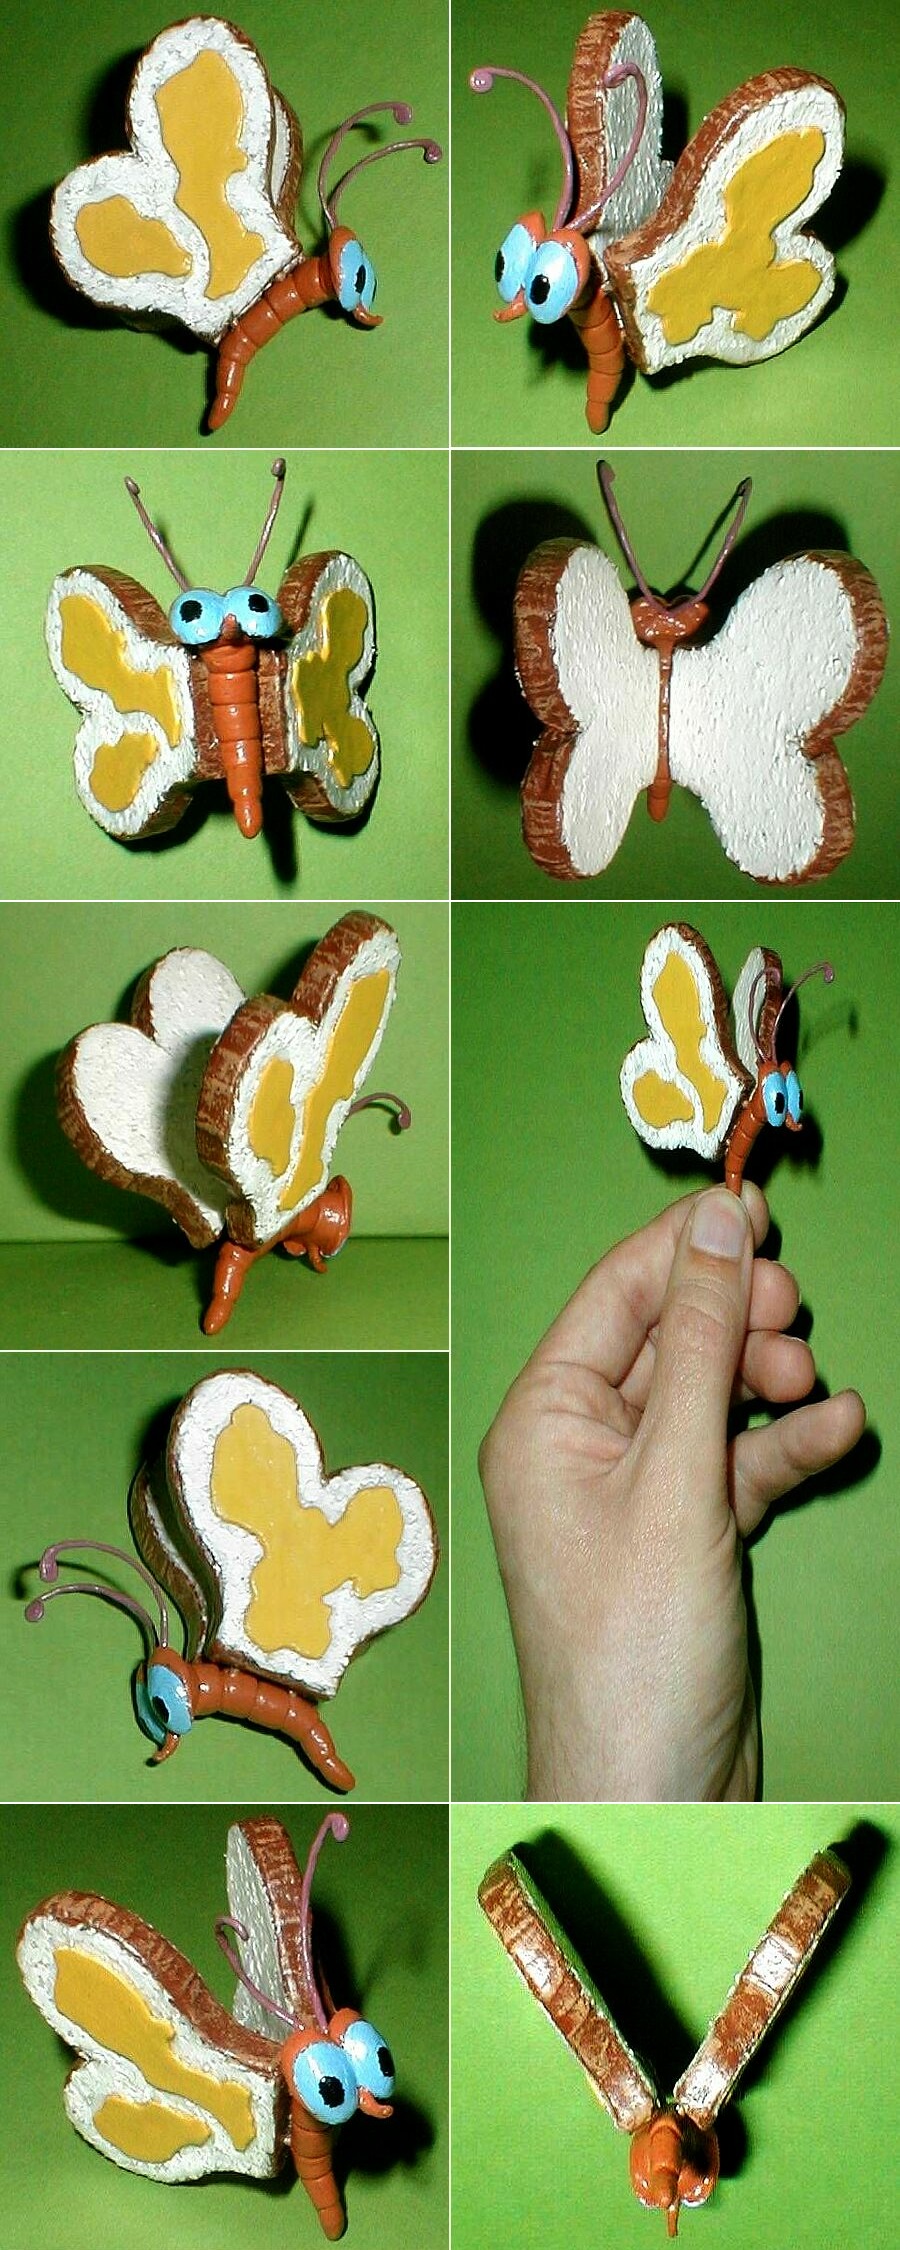 Alice In Wonderland Bread And Butterfly By Kramwartap On Deviantart